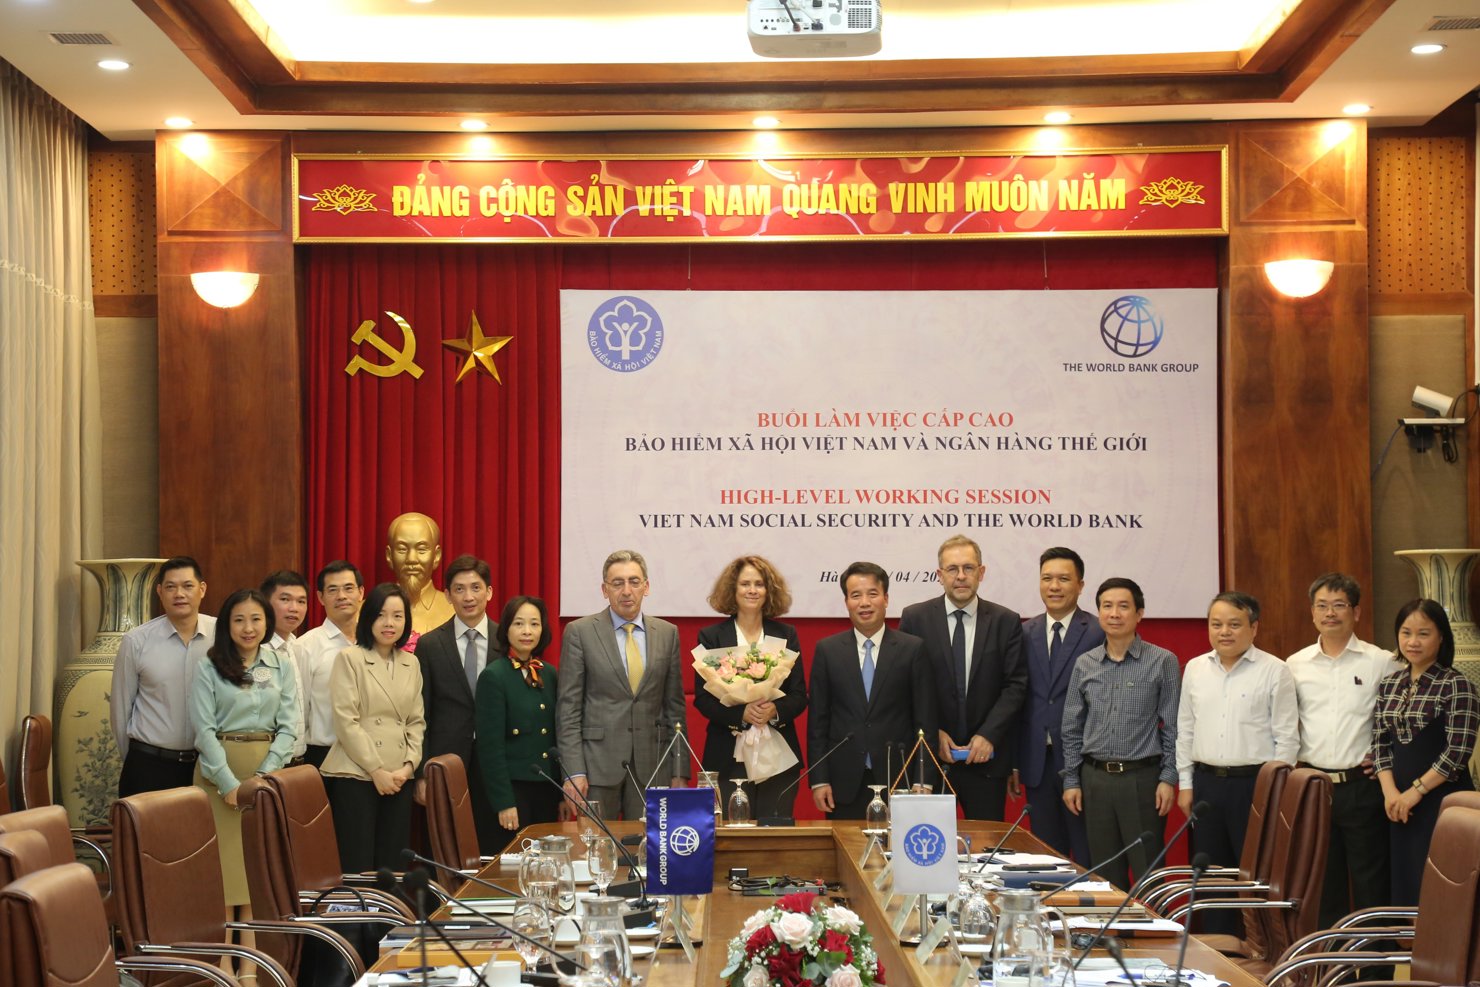 Các đại biểu chụp ảnh lưu niệm tại buổi làm việc giữa BHXH Việt Nam và Ngân hàng Thế giới.